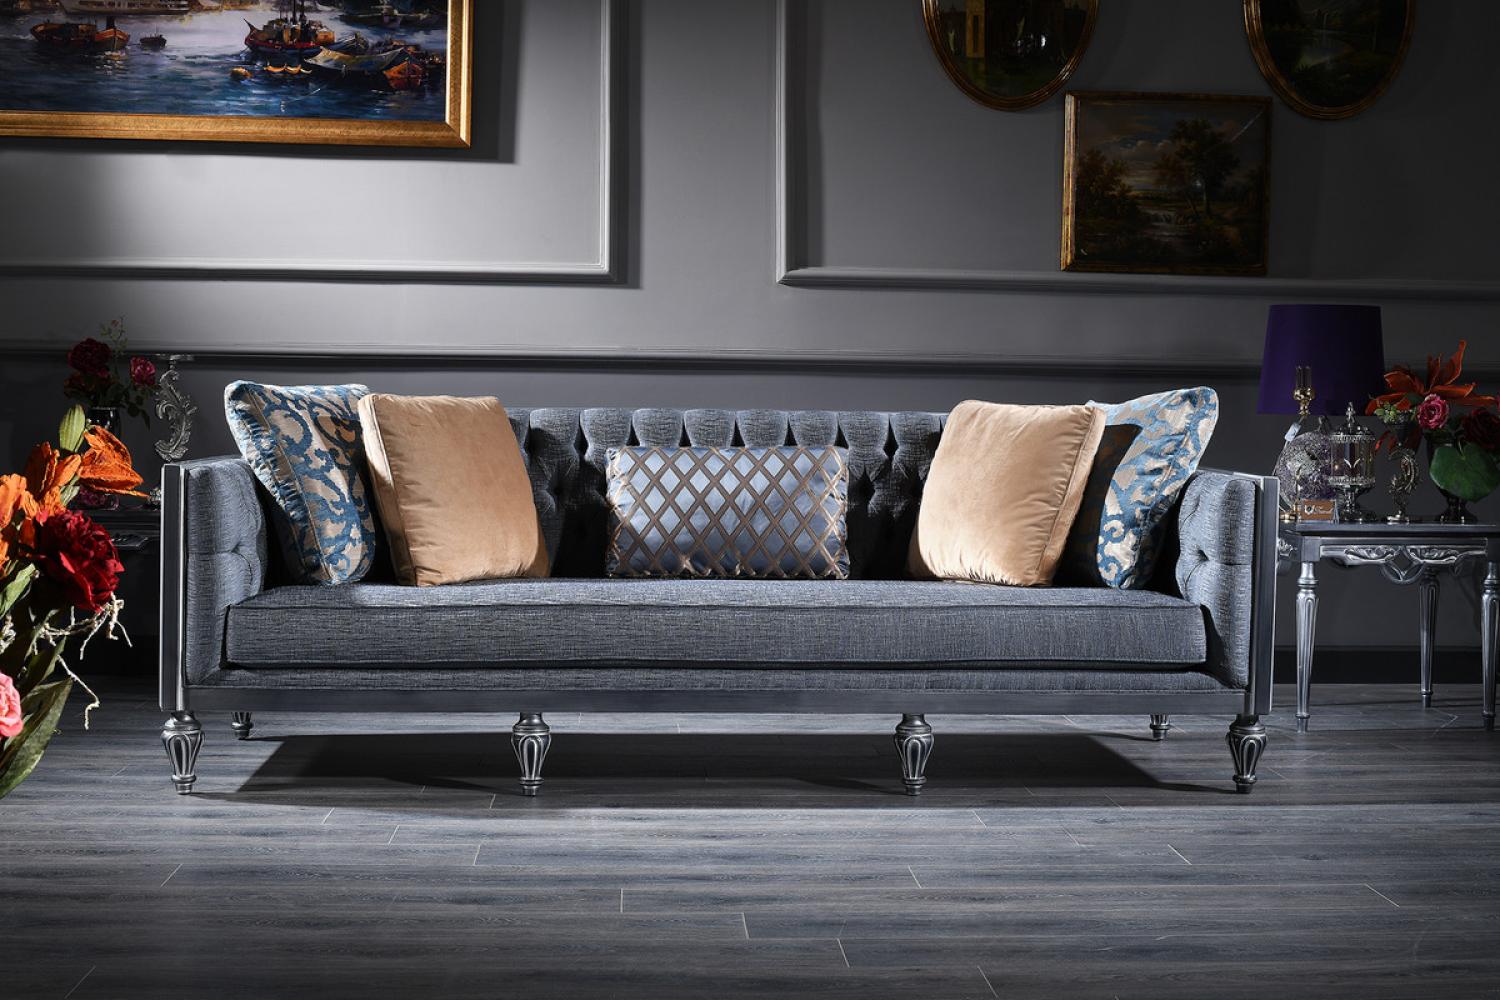 Casa Padrino Luxus Barock Wohnzimmer Set Blau / Beige / Silber - 2 Sofas & 2 Sessel & Couchtisch - Barock Wohnzimmermöbel Bild 1